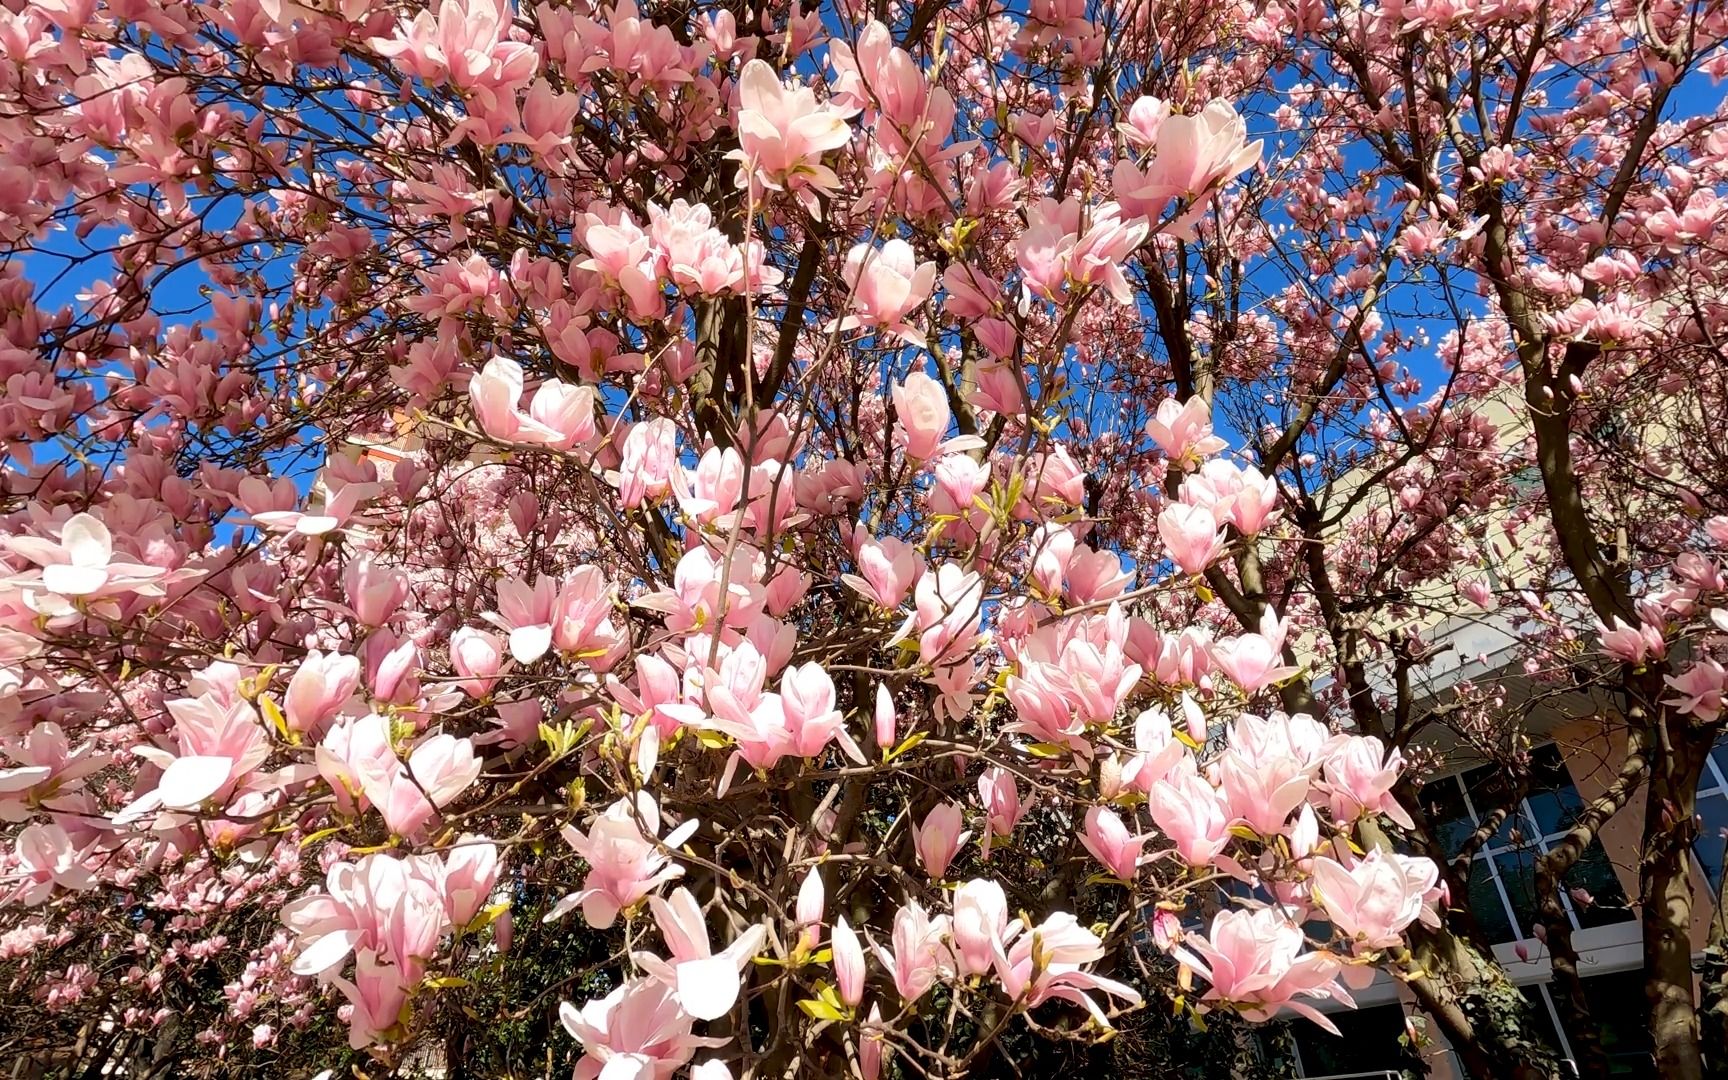 【风景展示】4K 令人惊叹的春天色彩 - 4K 春天的色彩 - 美丽的花朵